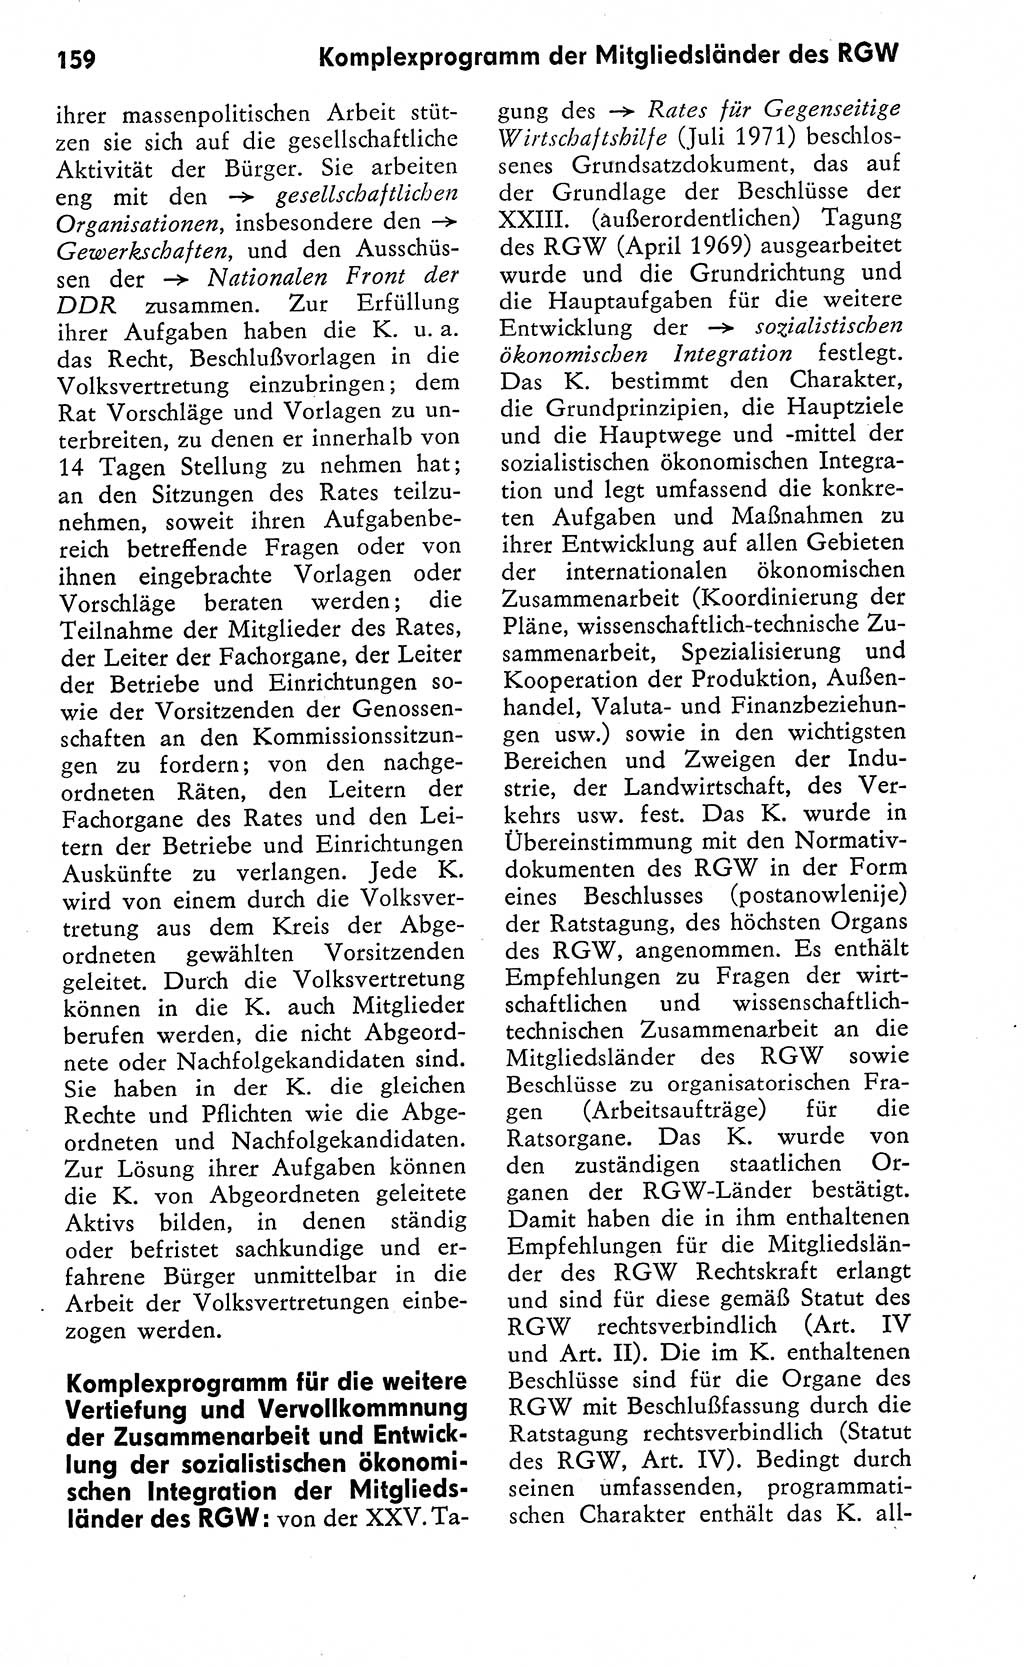 Wörterbuch zum sozialistischen Staat [Deutsche Demokratische Republik (DDR)] 1974, Seite 159 (Wb. soz. St. DDR 1974, S. 159)